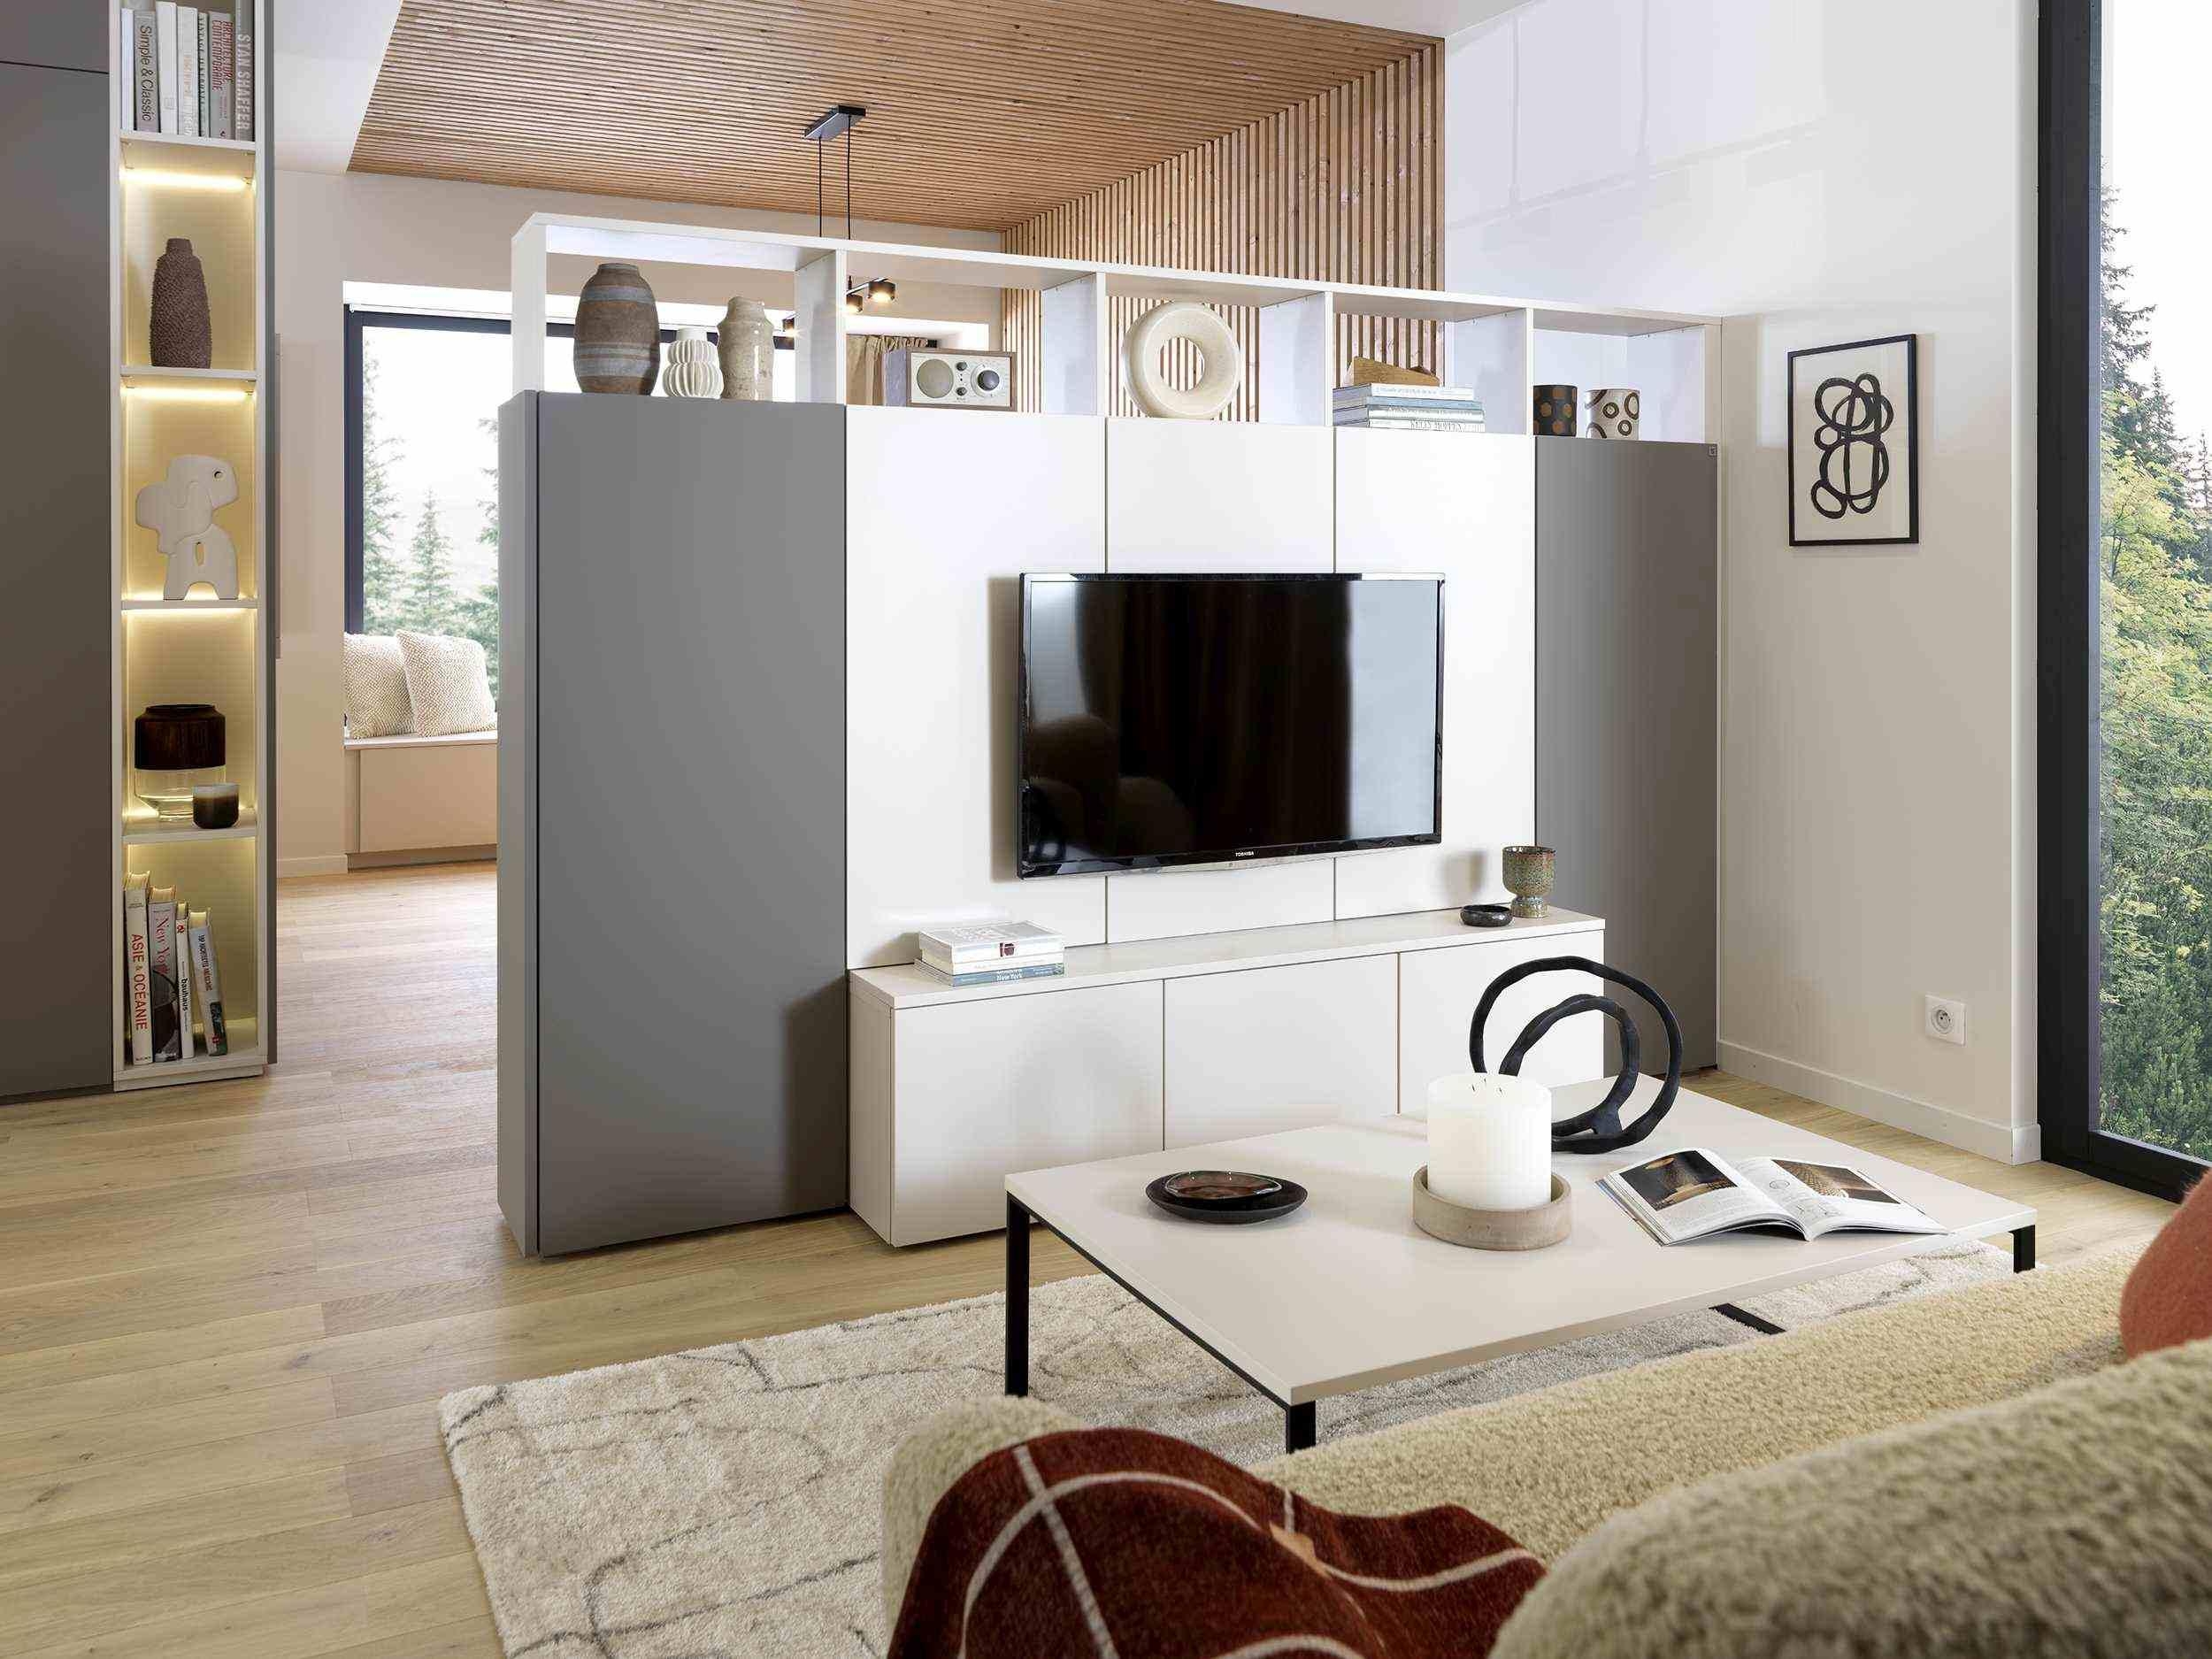 Vertikales Wohndesign von SCHMIDT: Wie man Räume doppelt nutzt! www.home-design.schmidt